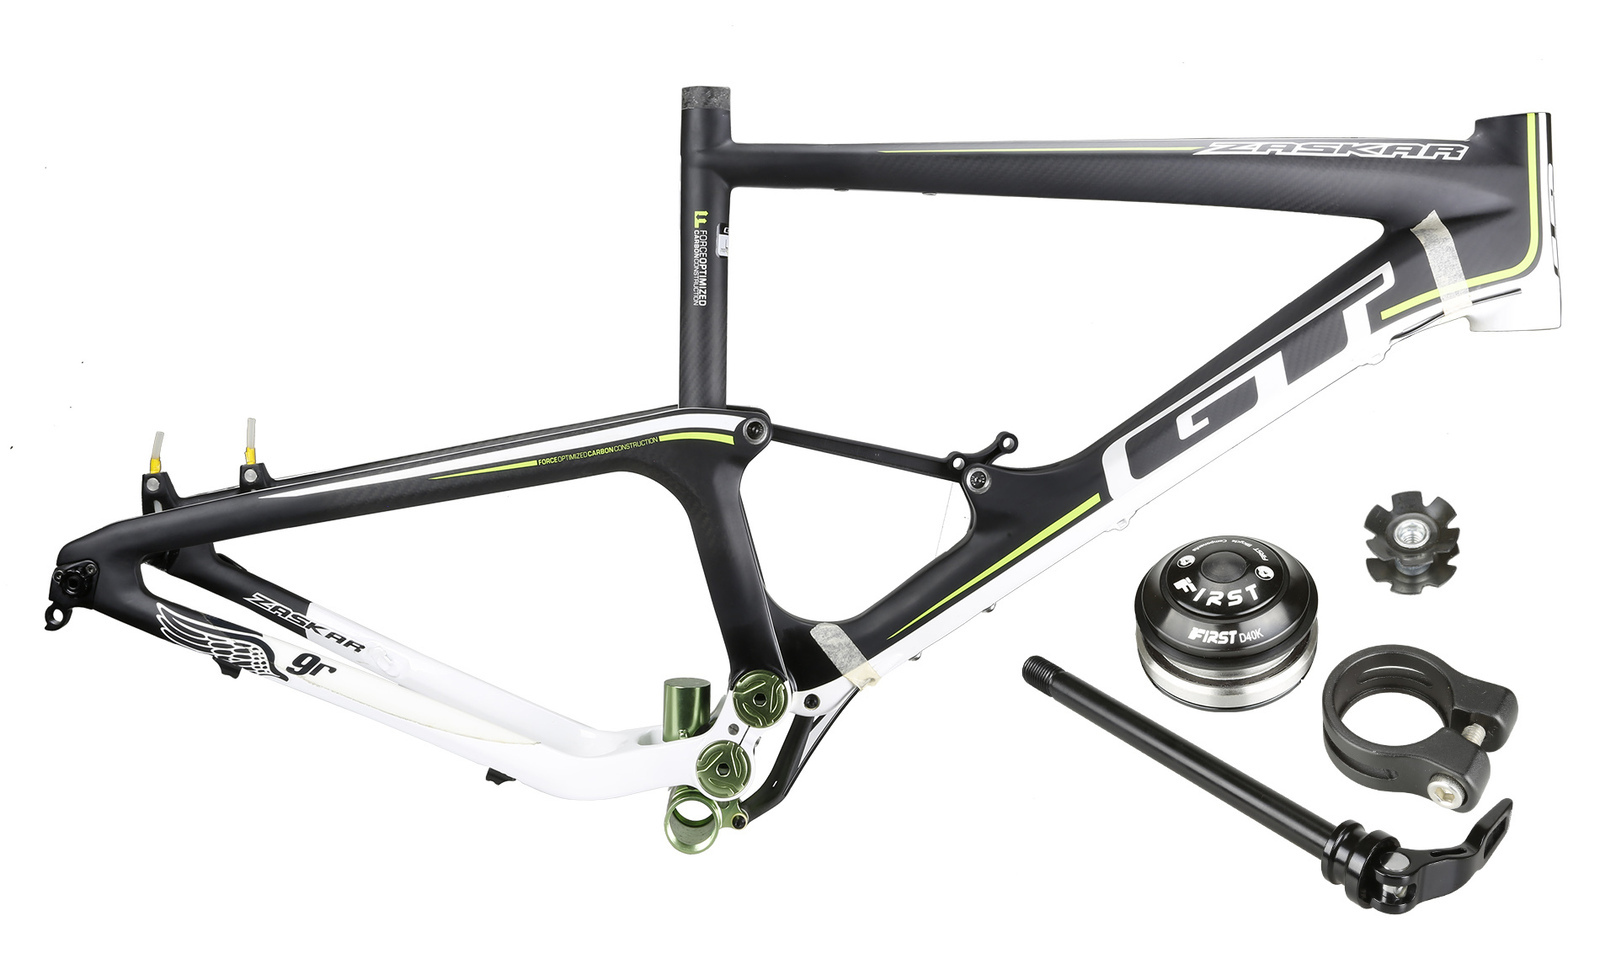 GT Zaskar 100 9R EXPERT Carbon Mountain Bike Full Suspension Frame 29" L